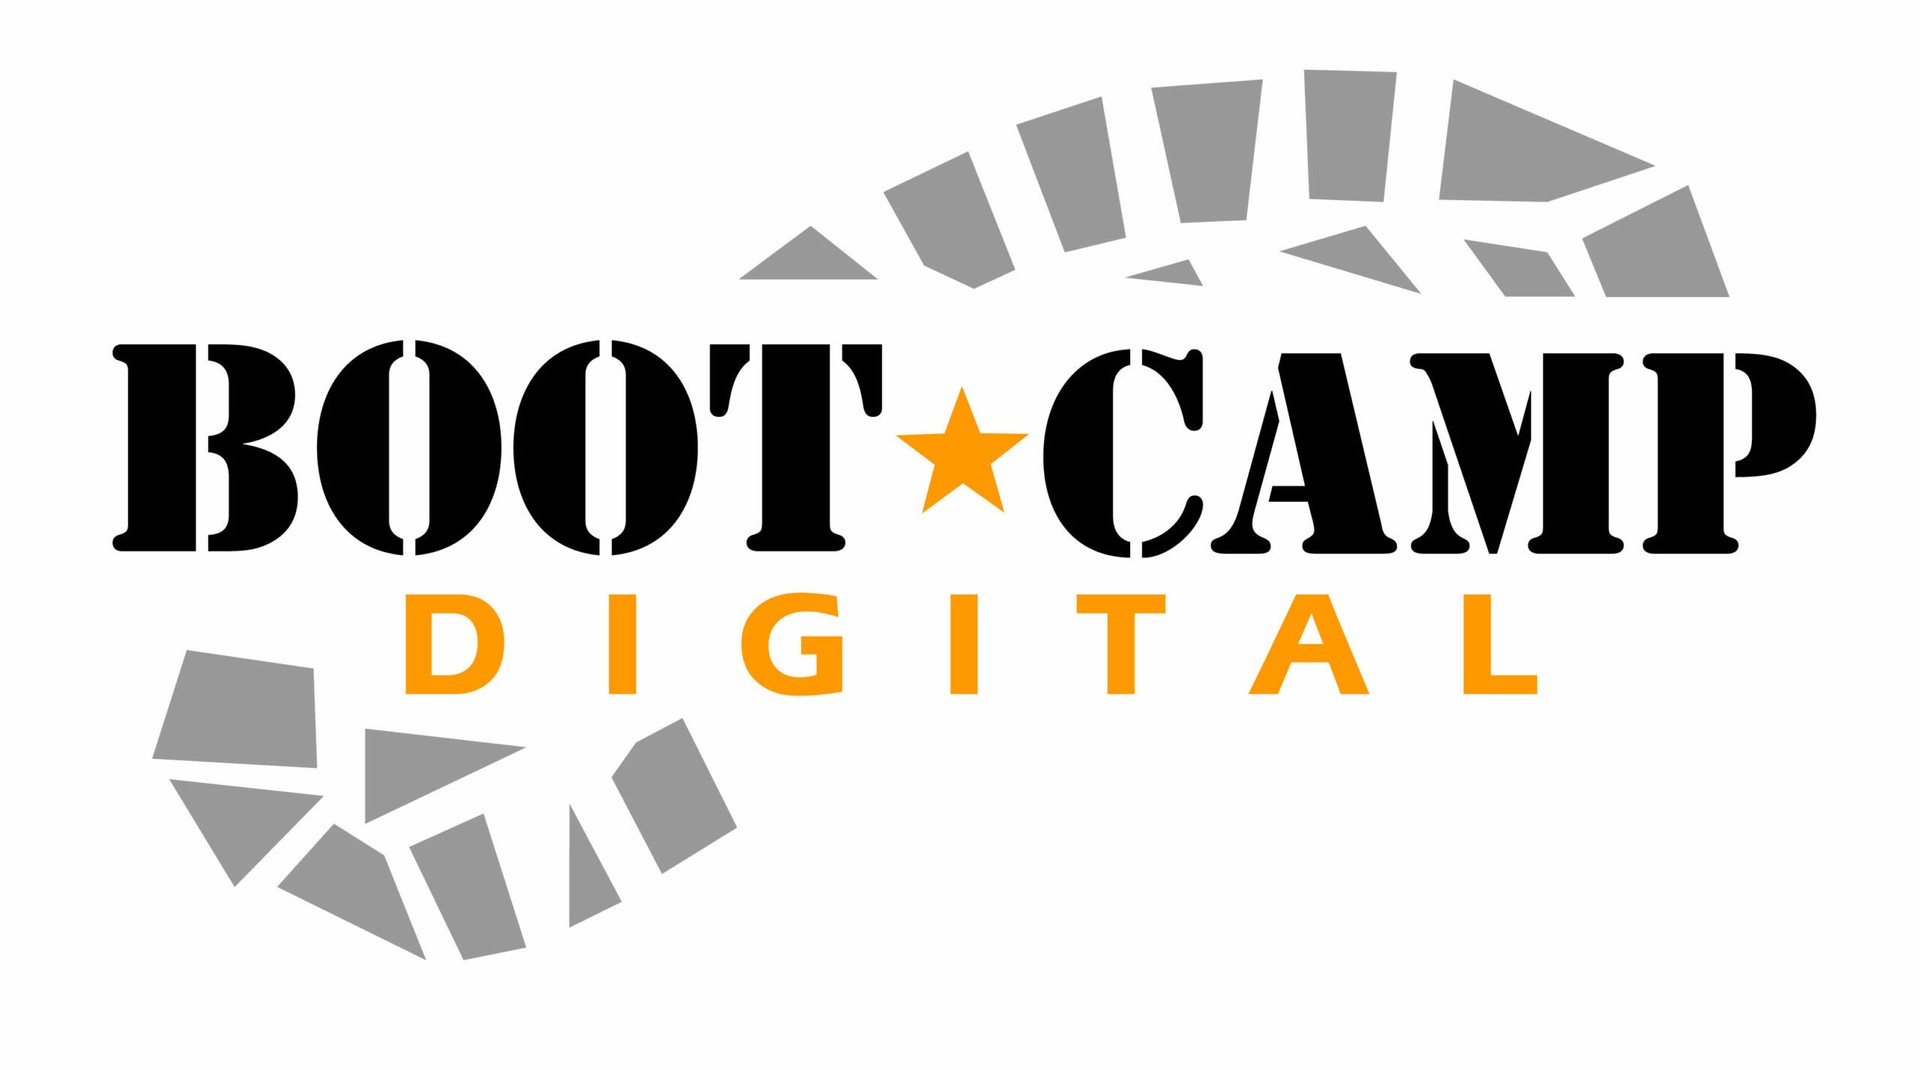 Digital marketing courses in Riyadh - Bootcamp logo